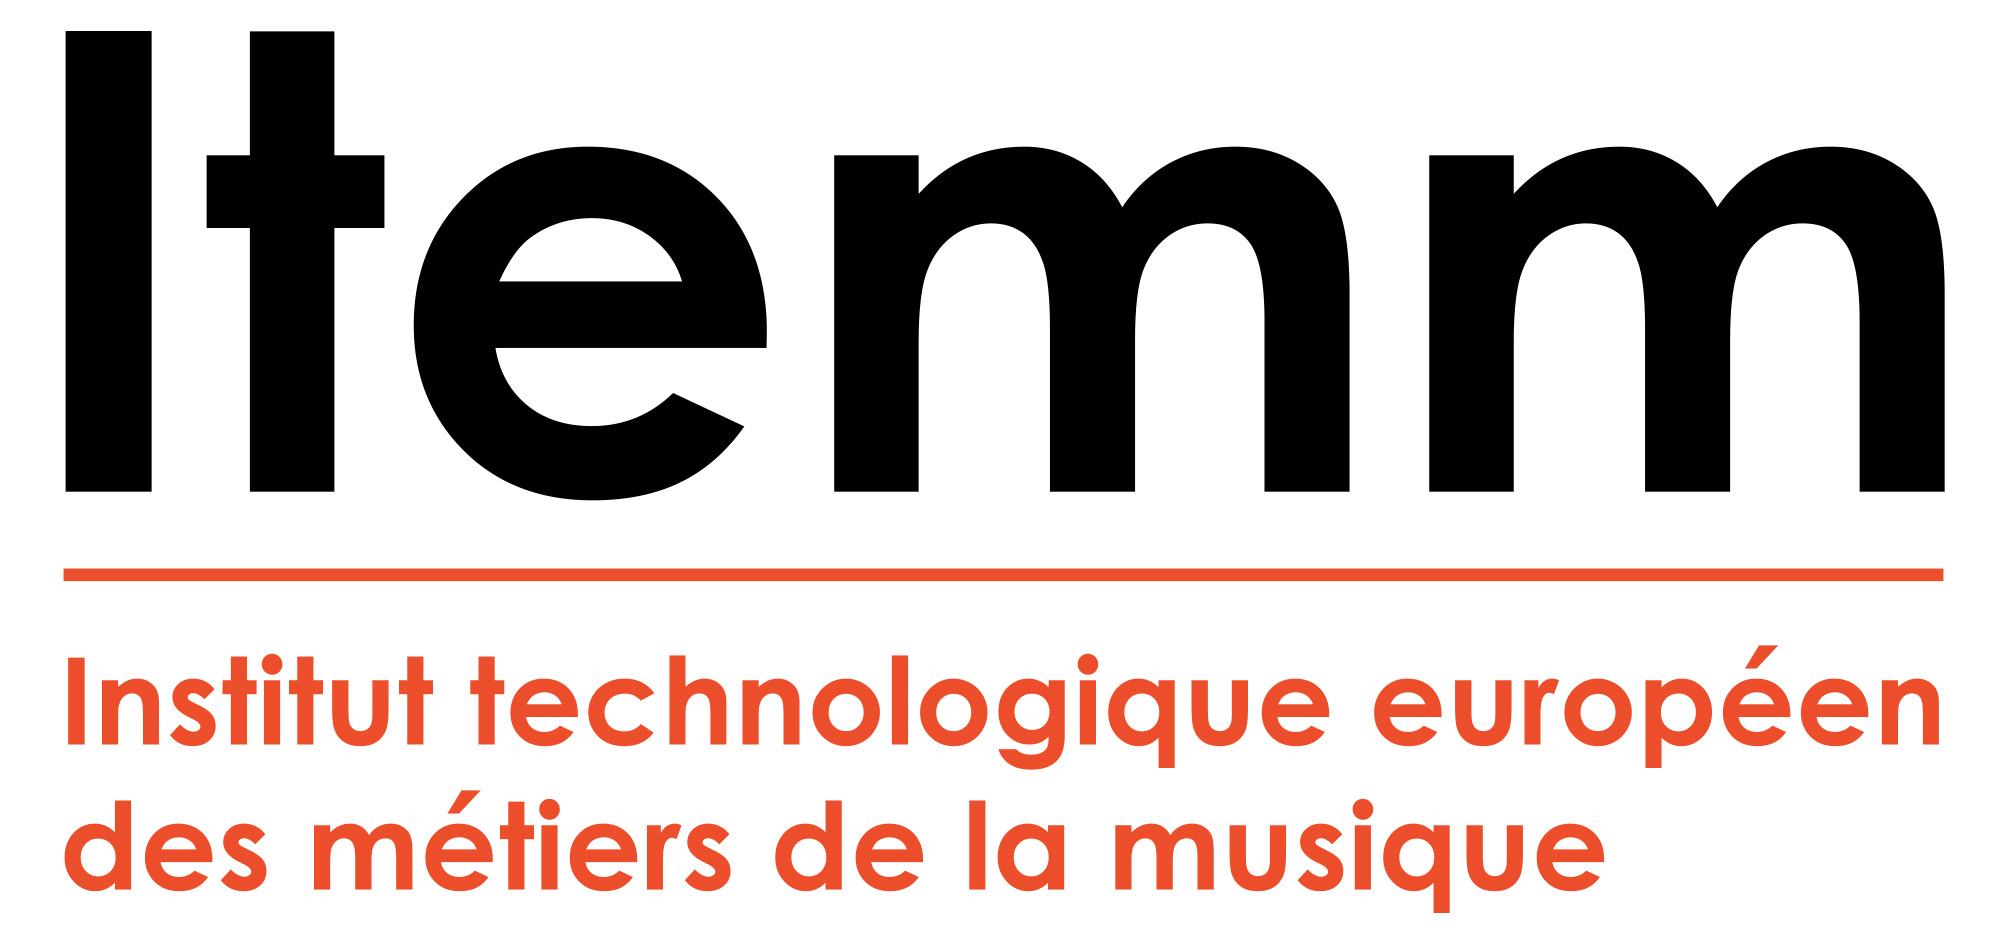 Logotype de Institut technologique européen des métiers de la musique (Itemm)